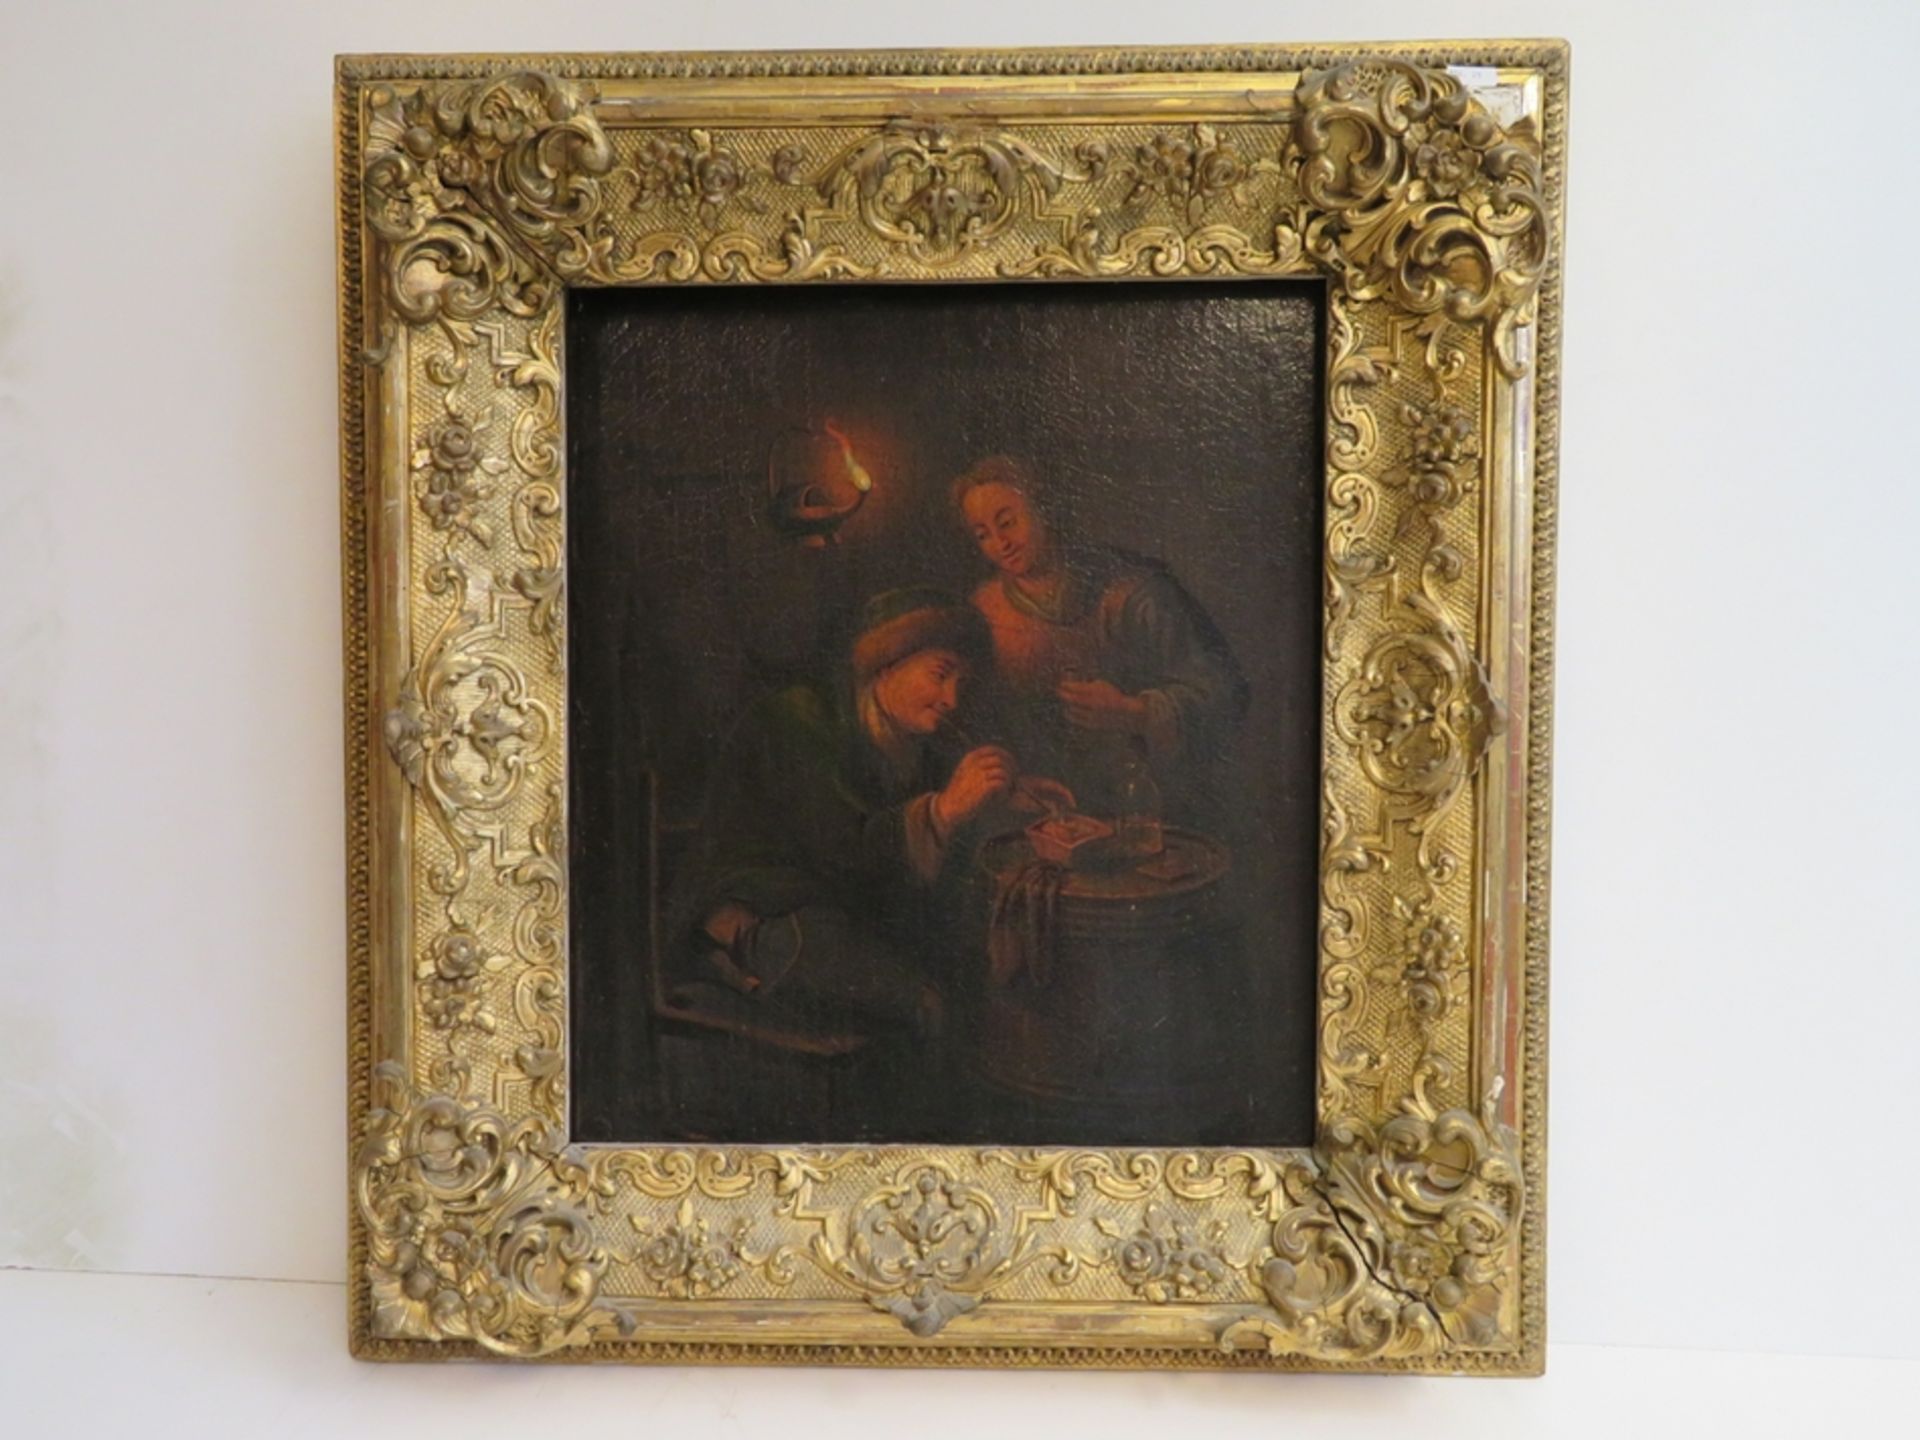 Niederlande, 18./19. Jahrhundert, "Zwei Personen bei Kerzenlicht", Öl/Leinwand, doubliert, 41 x 36  - Bild 2 aus 2